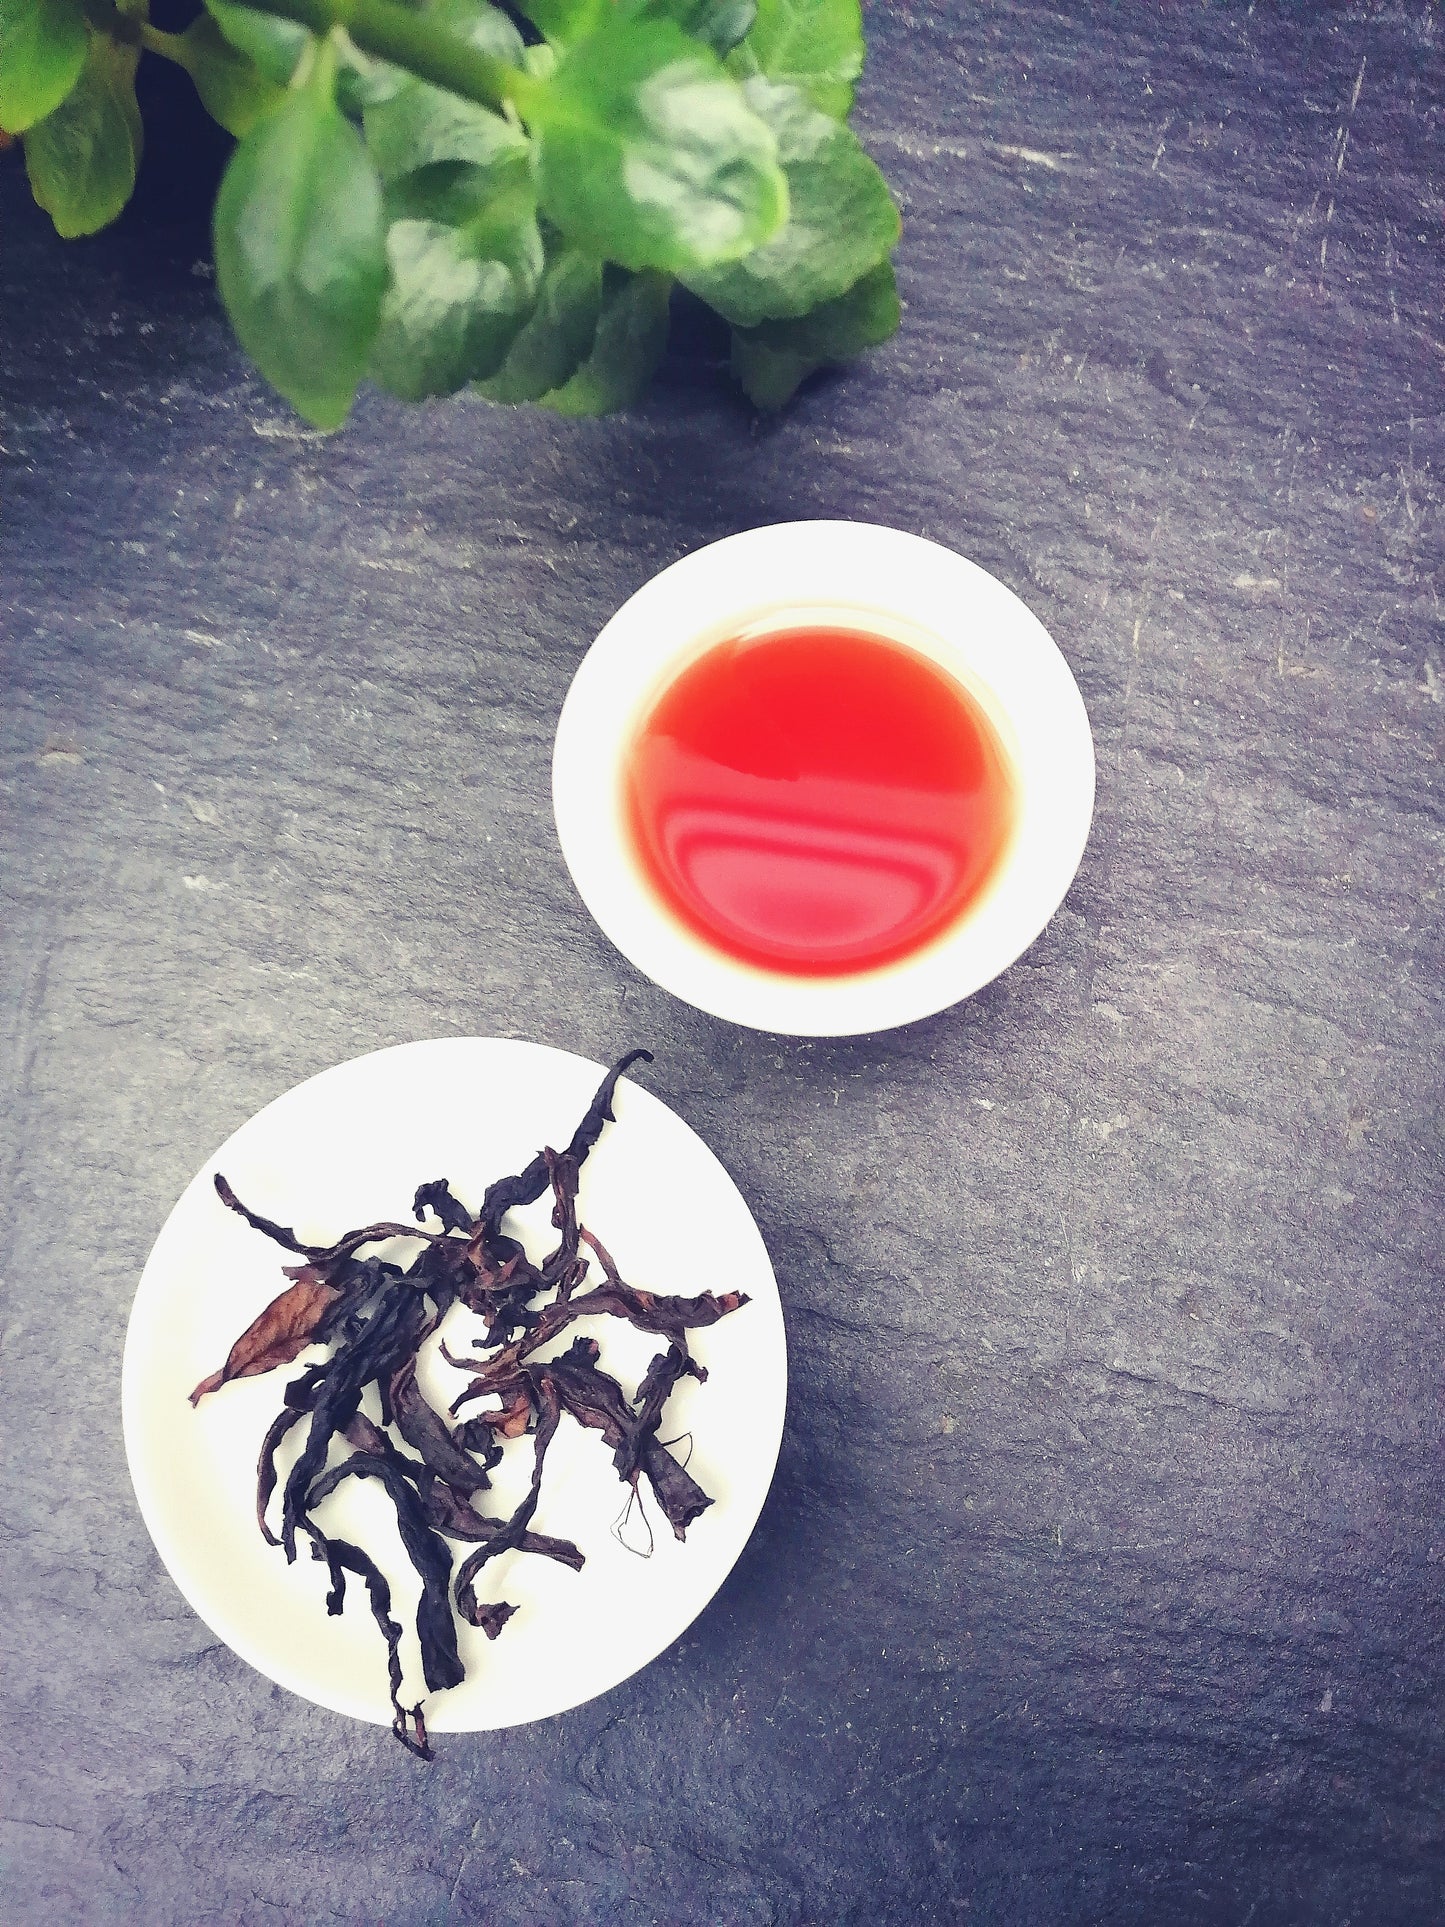 Rou Gui Wuyi Oolong Tea | "Kaneelschors" Wuyi Yancha Oolong thee